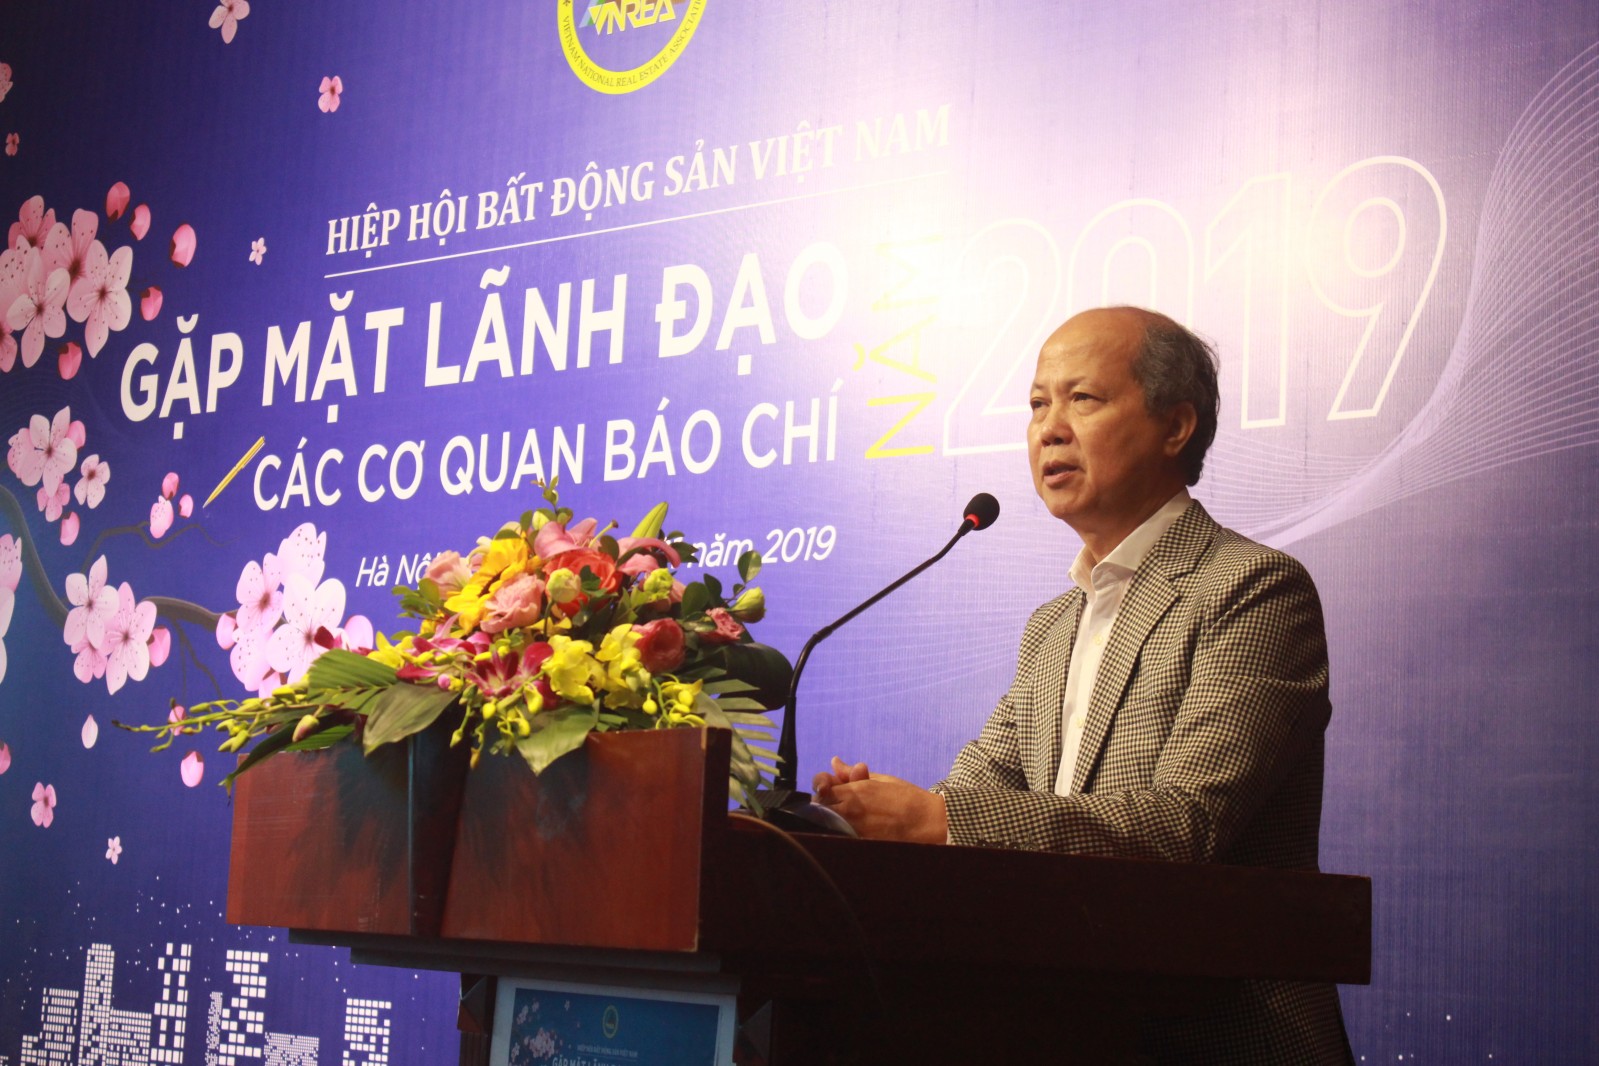 Chủ tịch Nguyễn Trần Nam chia sẻ tại buổi gặp mặt